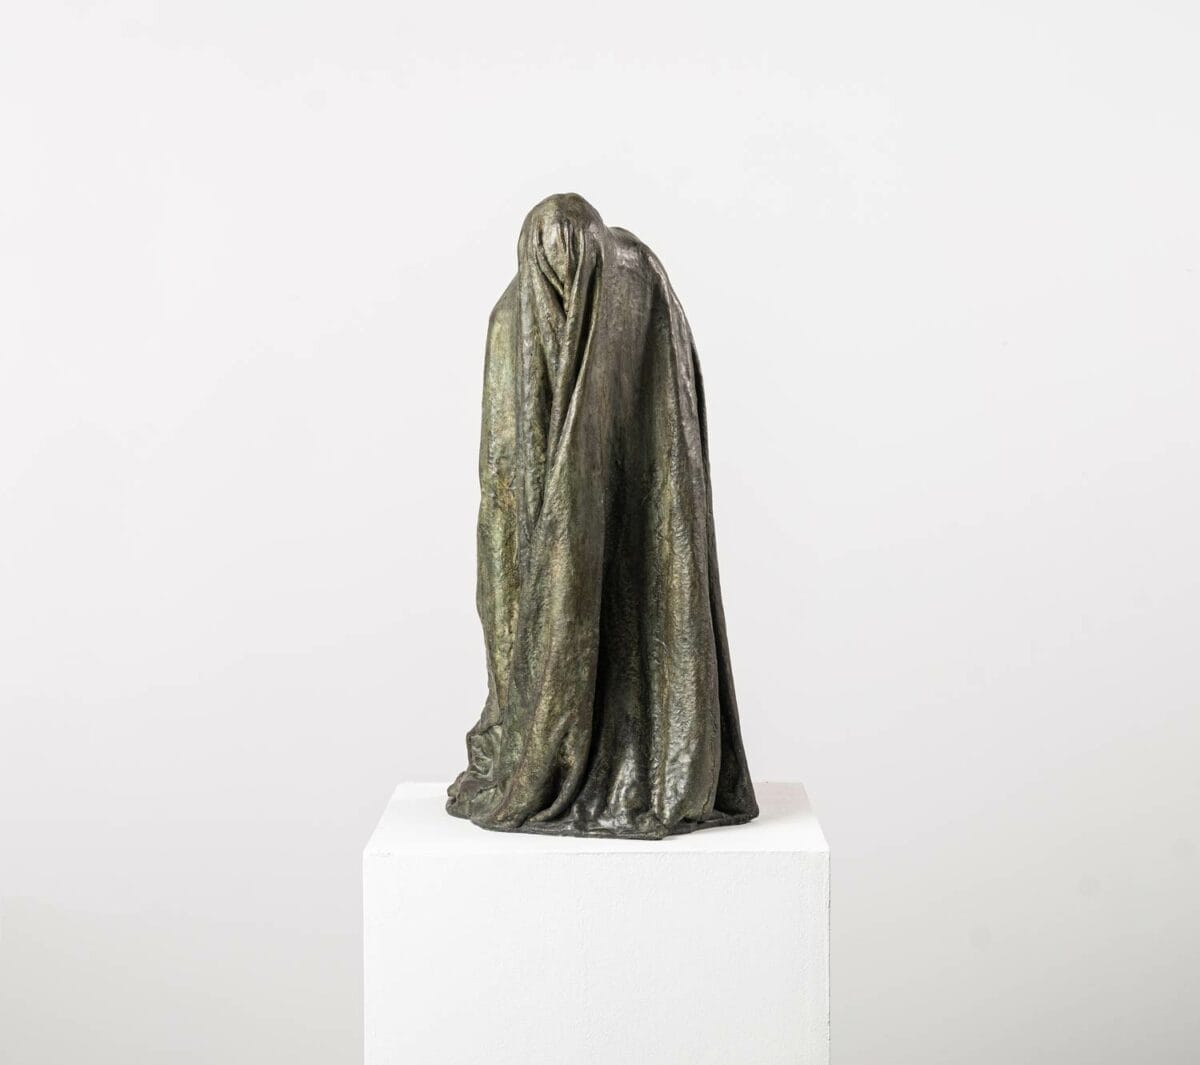 Une sculpture en bronze de Guy Le Perse, intitulée "Ombre Voilée I". Inspirée par la "Divine Comédie" de Dante, cette œuvre représente un hypocrite condamné dans le huitième cercle de l'Enfer.